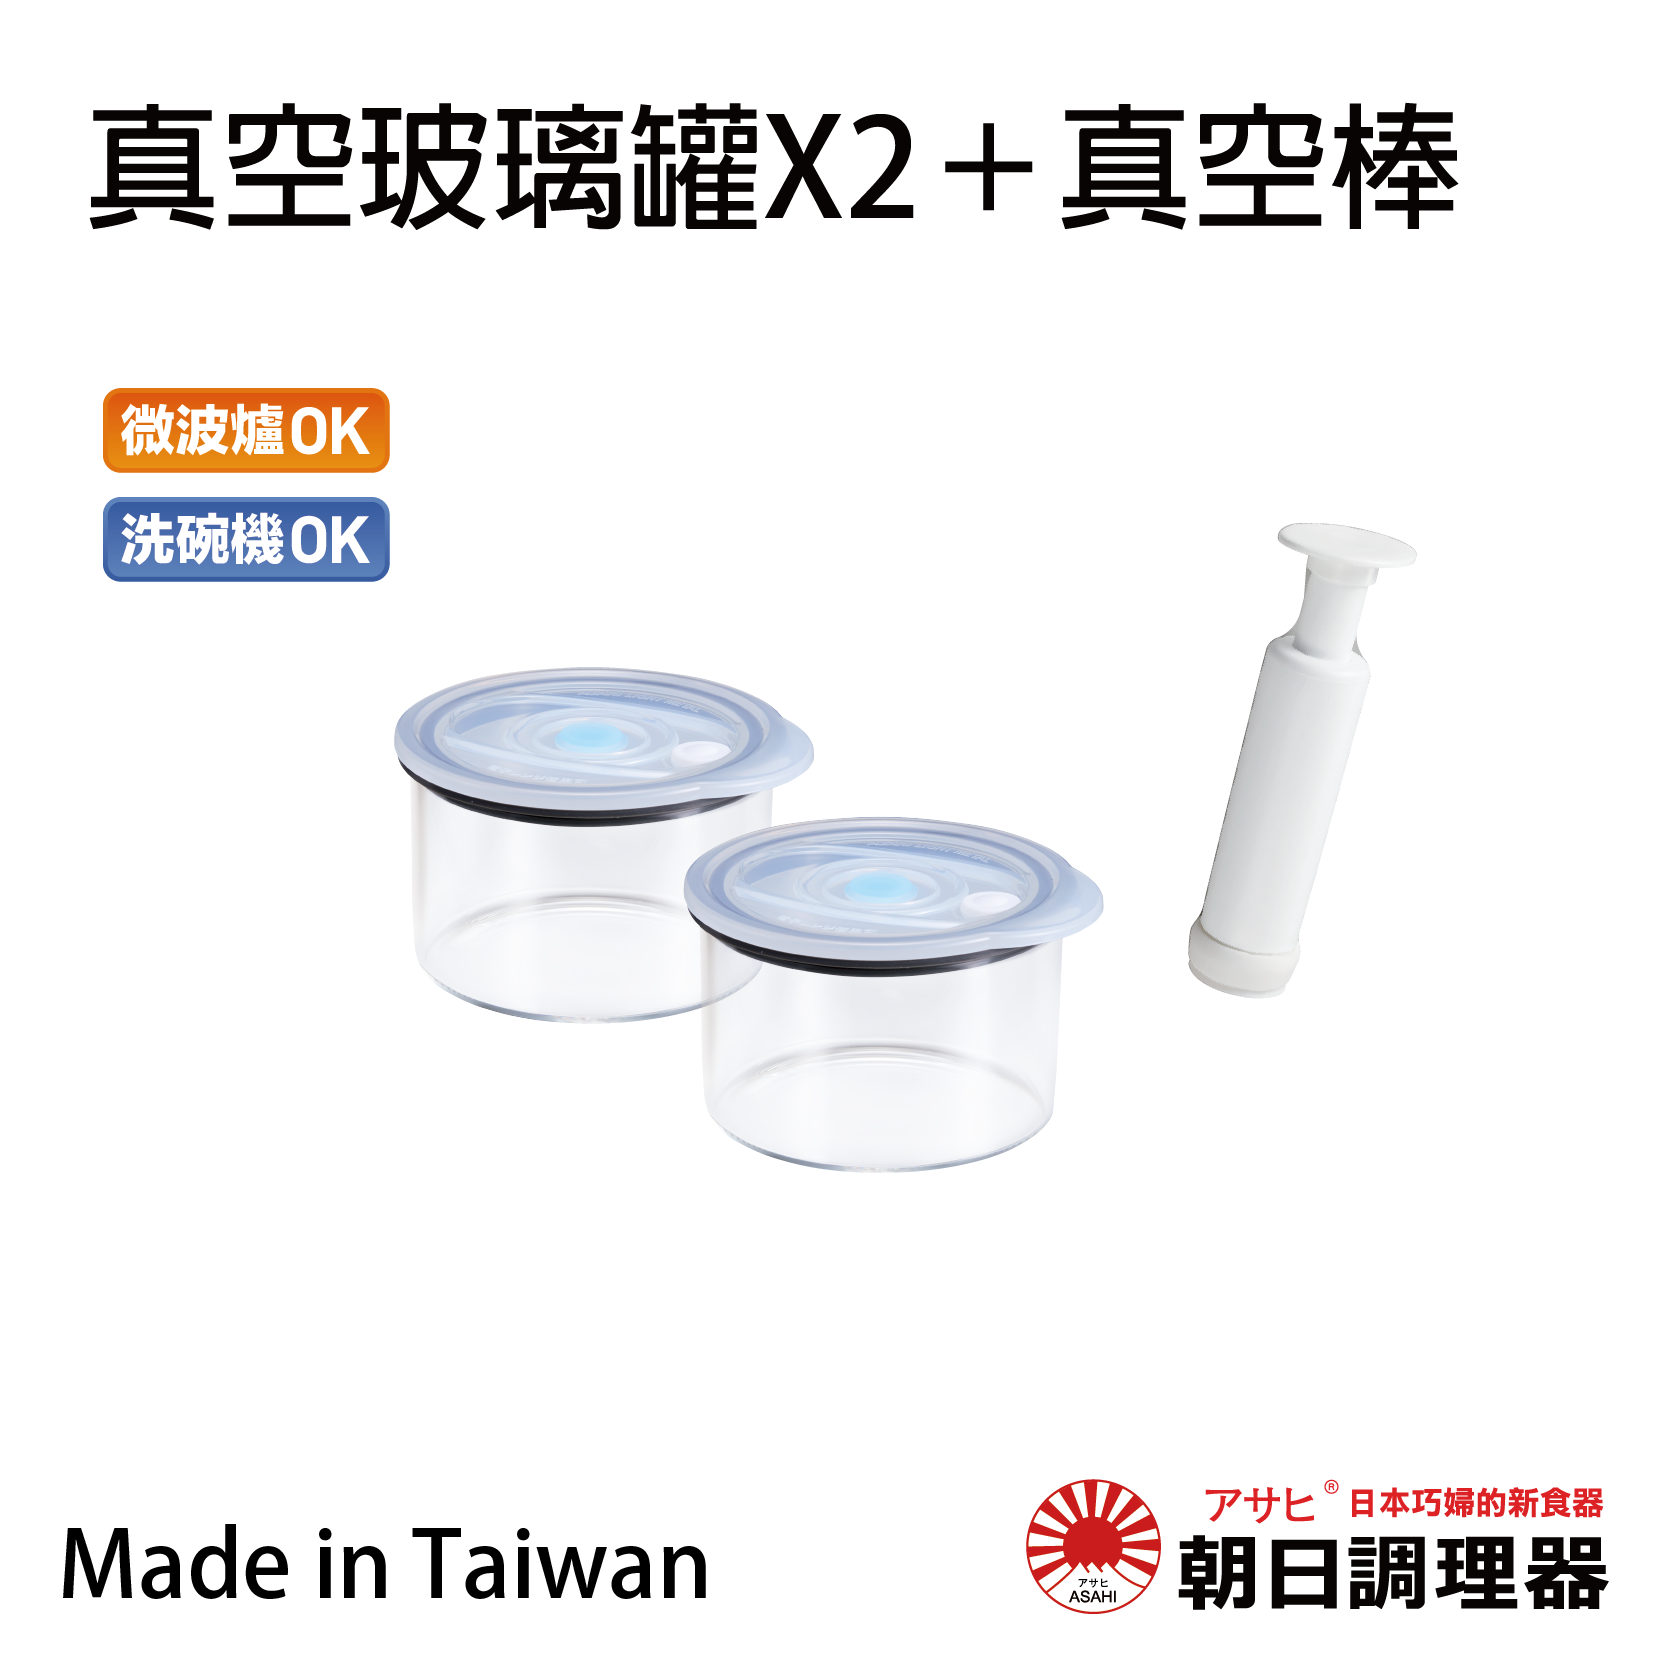 【朝日調理器】台灣製 真空玻璃罐X2+真空棒 真空密封容器 可堆疊保鮮盒 官方直營